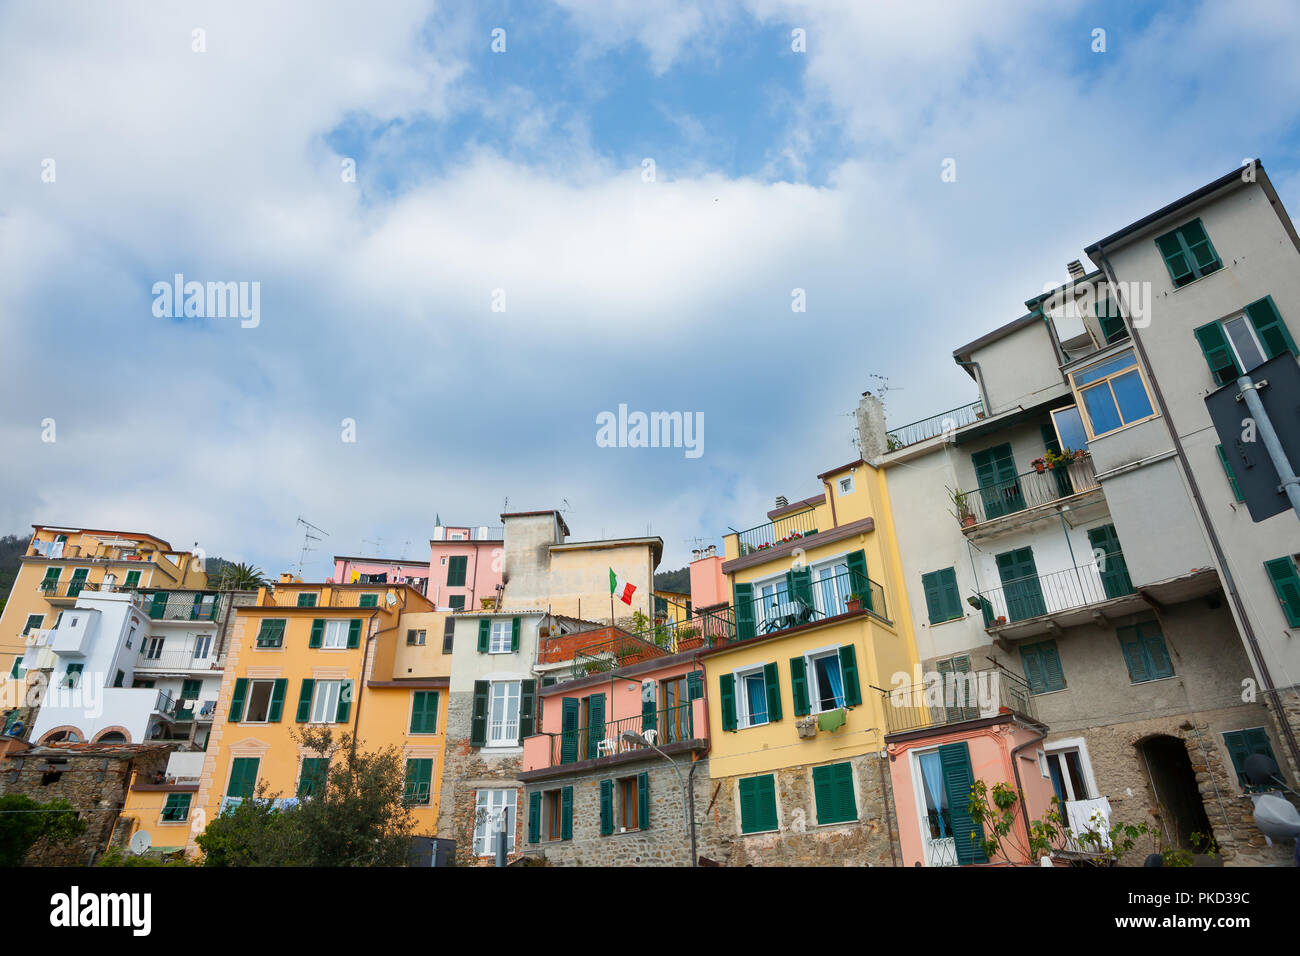 Arhitecture tipici e i colori della terrazza case in italiano borgo di Riomaggiore Foto Stock